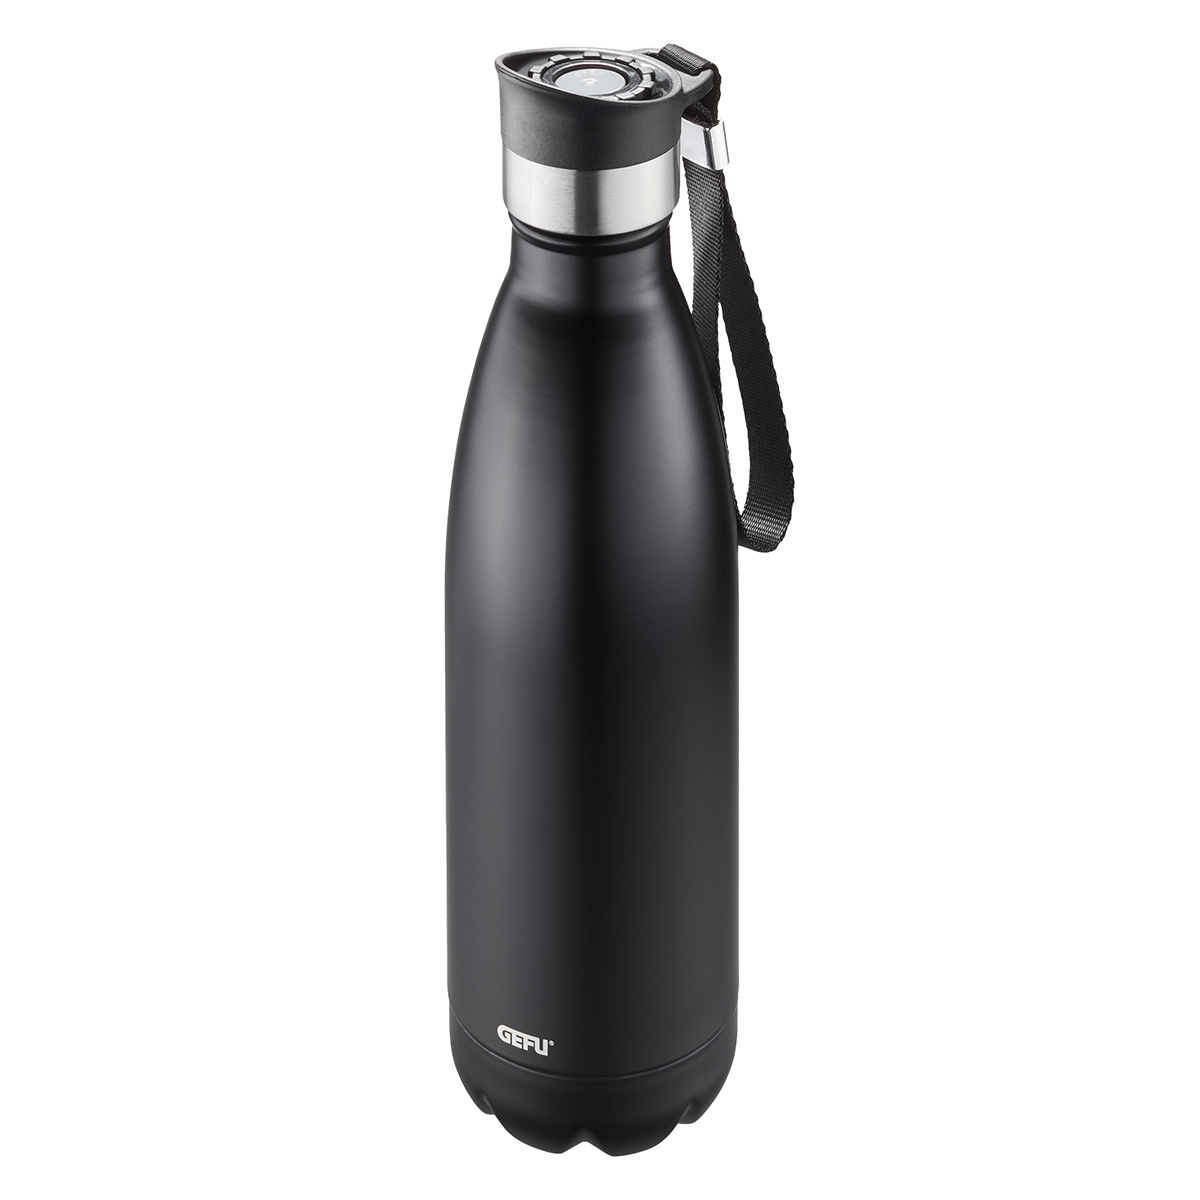 GEFU Thermosflasche OLIMPIO Thermogefäß Wasserflasche groß auslaufsicher Schwarz Trinkflasche